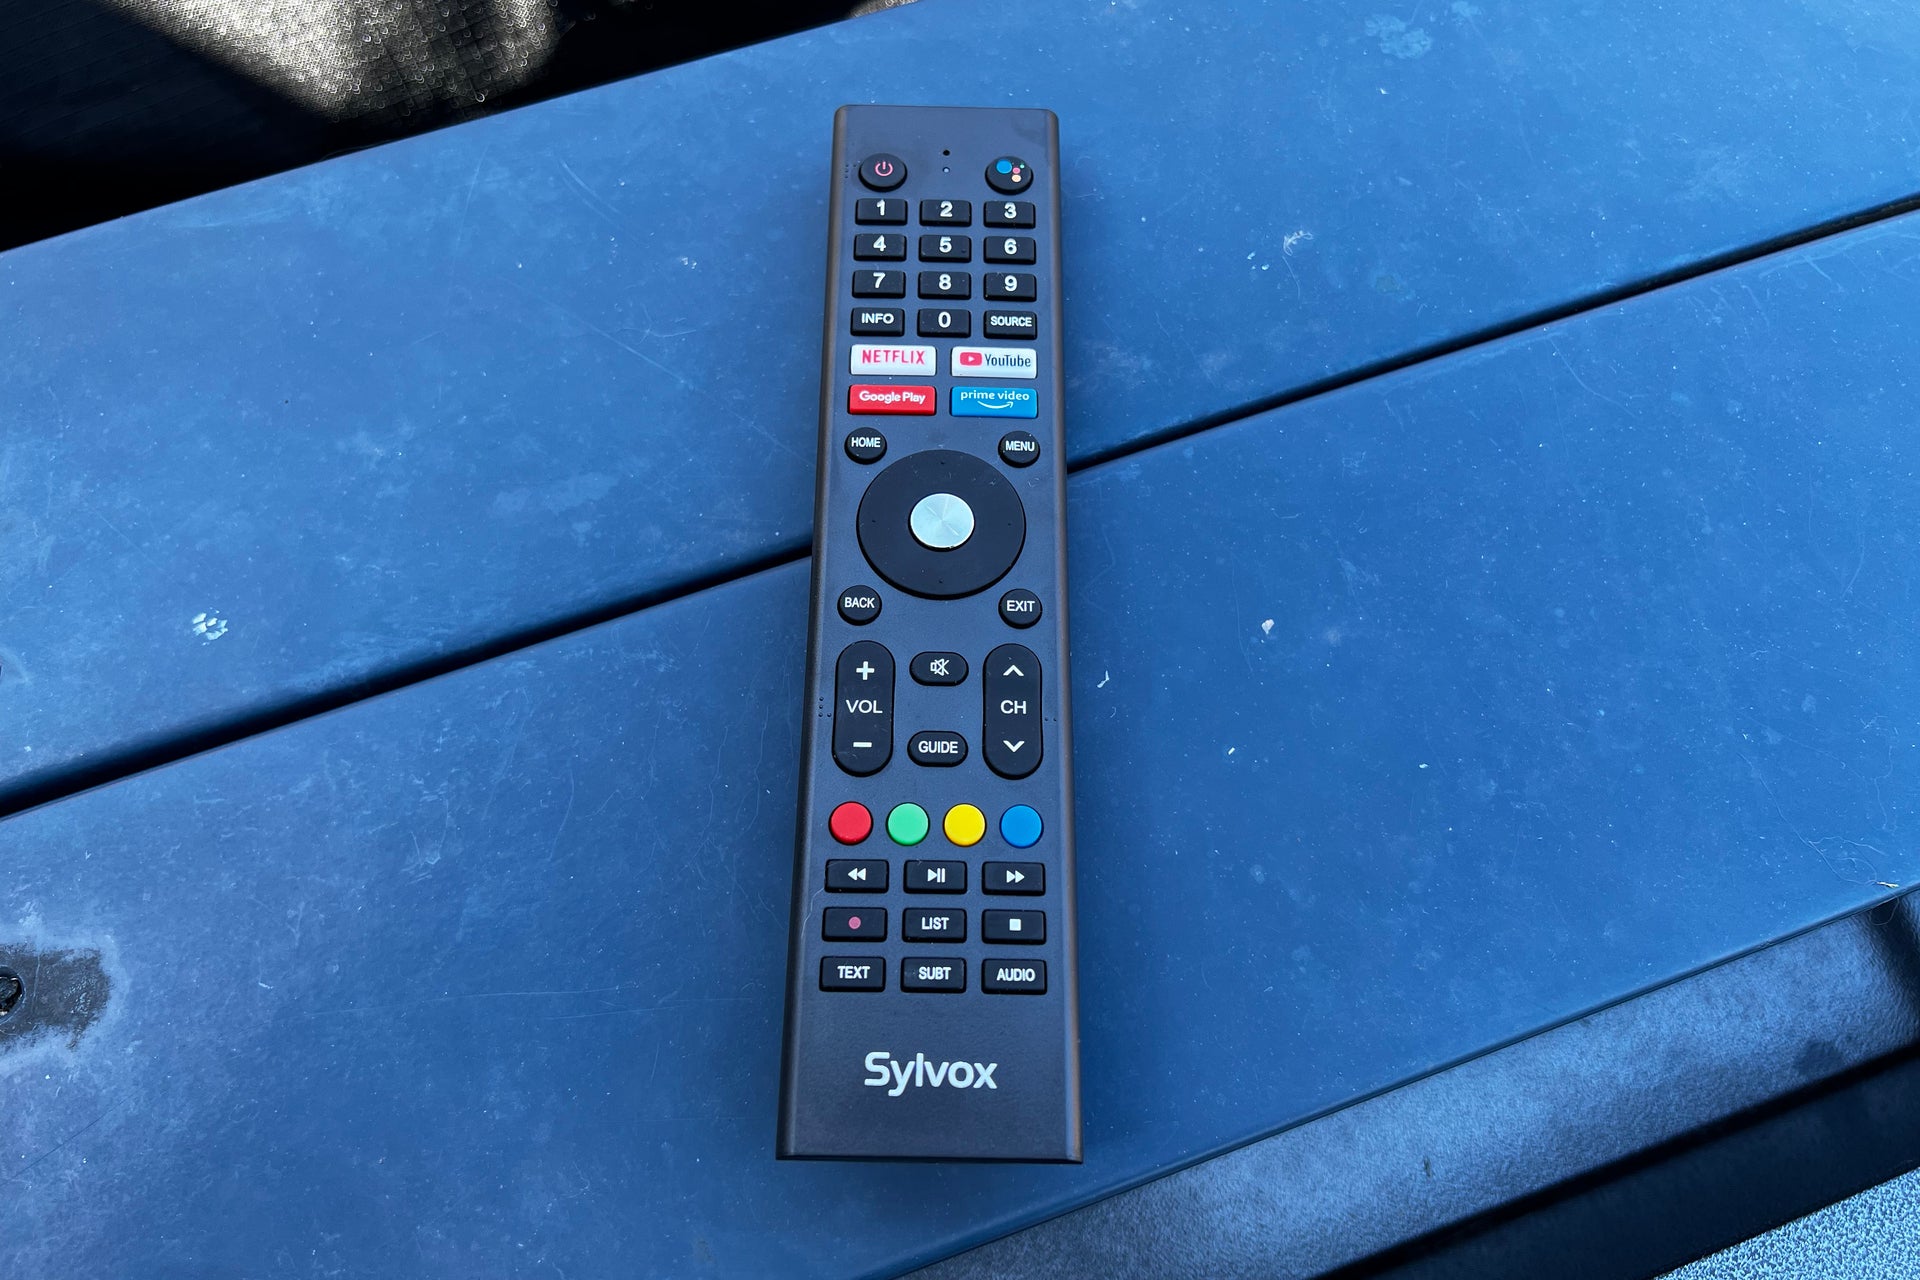 Sylvox 43-inch Deck Pro Outdoor TV remote control